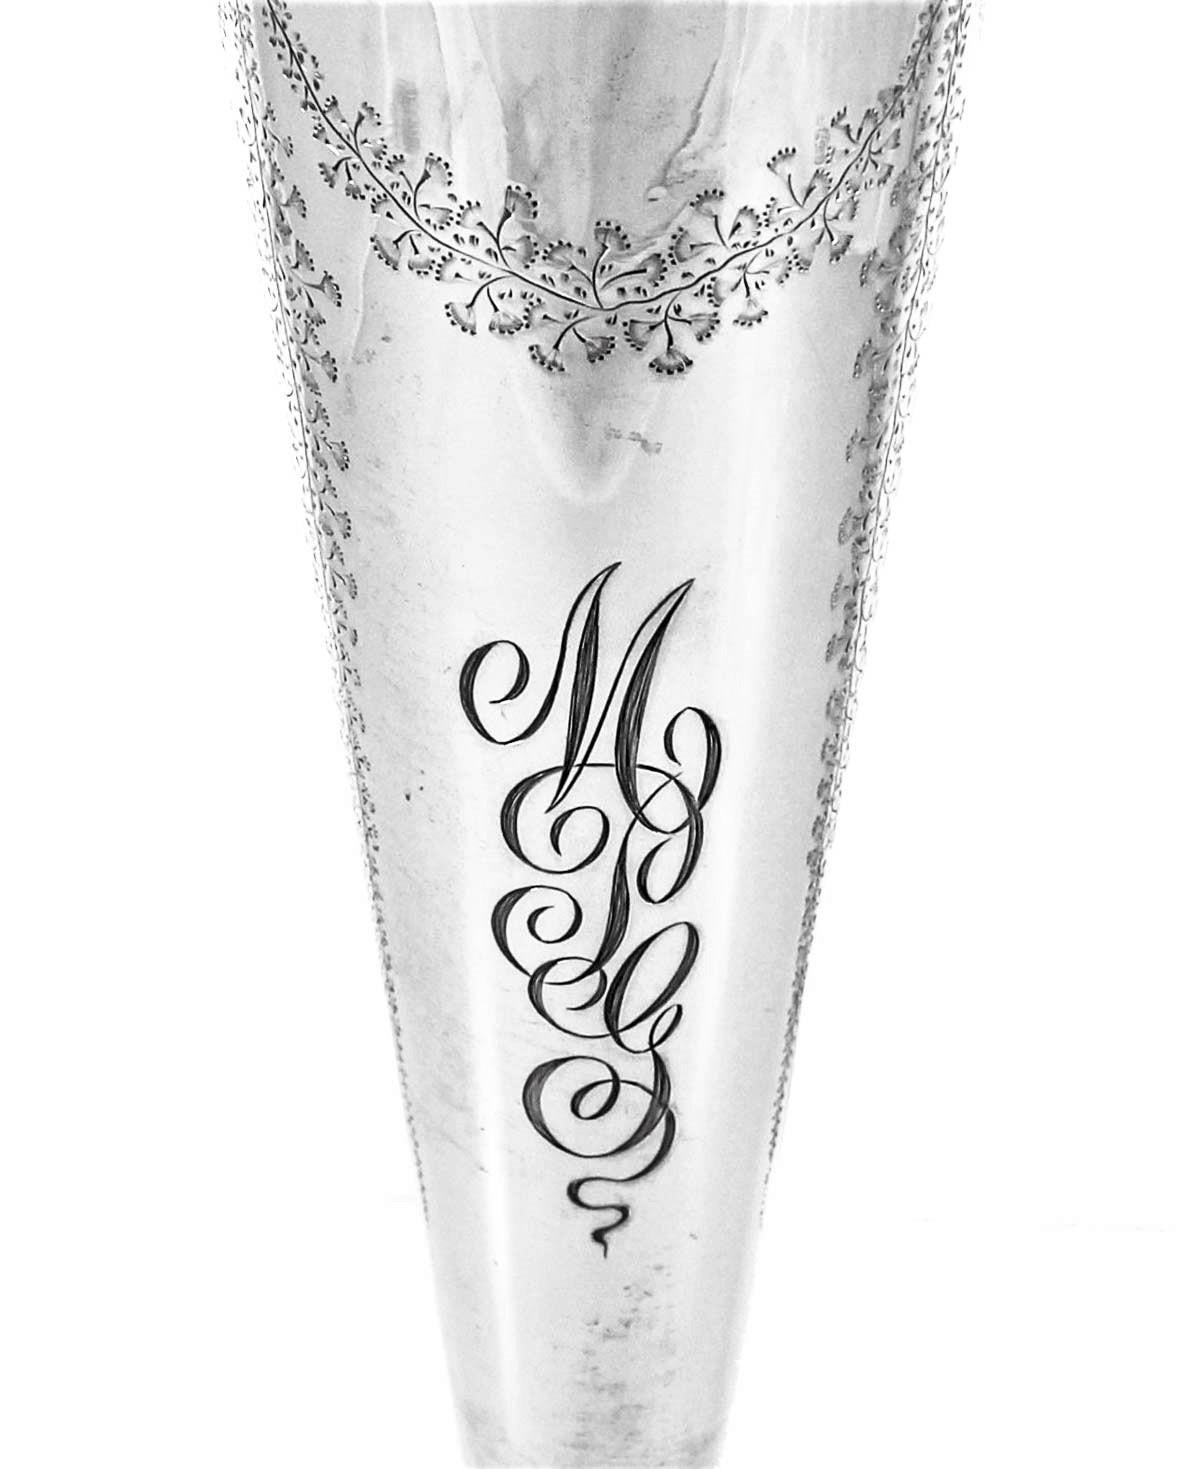 Schleifen, Kränze und Blumen verleihen dieser Vase aus Sterlingsilber eine zarte, feminine Note. Sie ist oben breiter und verjüngt sich nach unten hin, so dass sich die Blüten schön ausfüllen können. Um den Sockel herum sind ähnliche Ätzungen wie